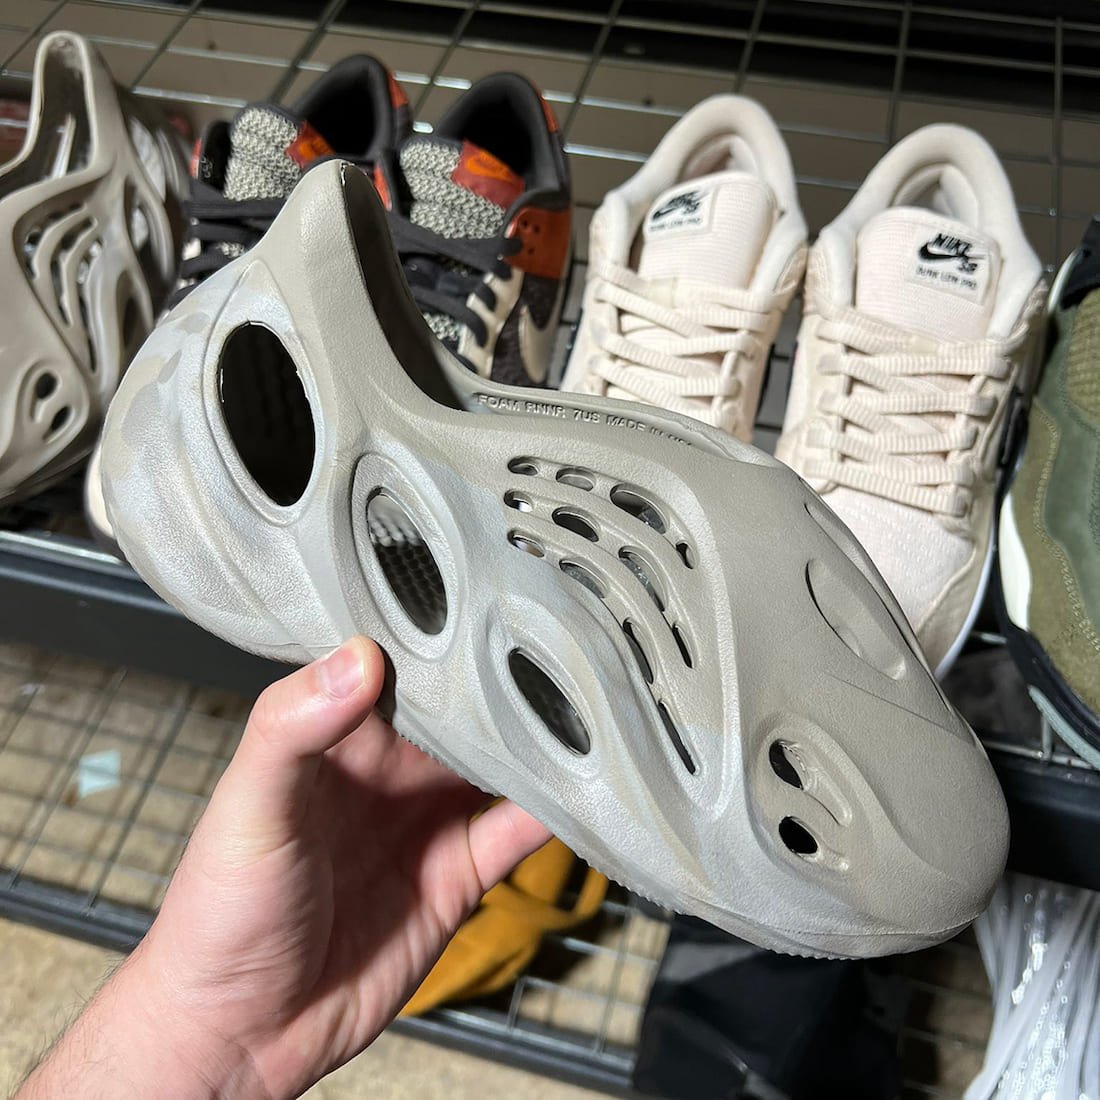 adidas Yeezy Foam Runner 2023 in Hands